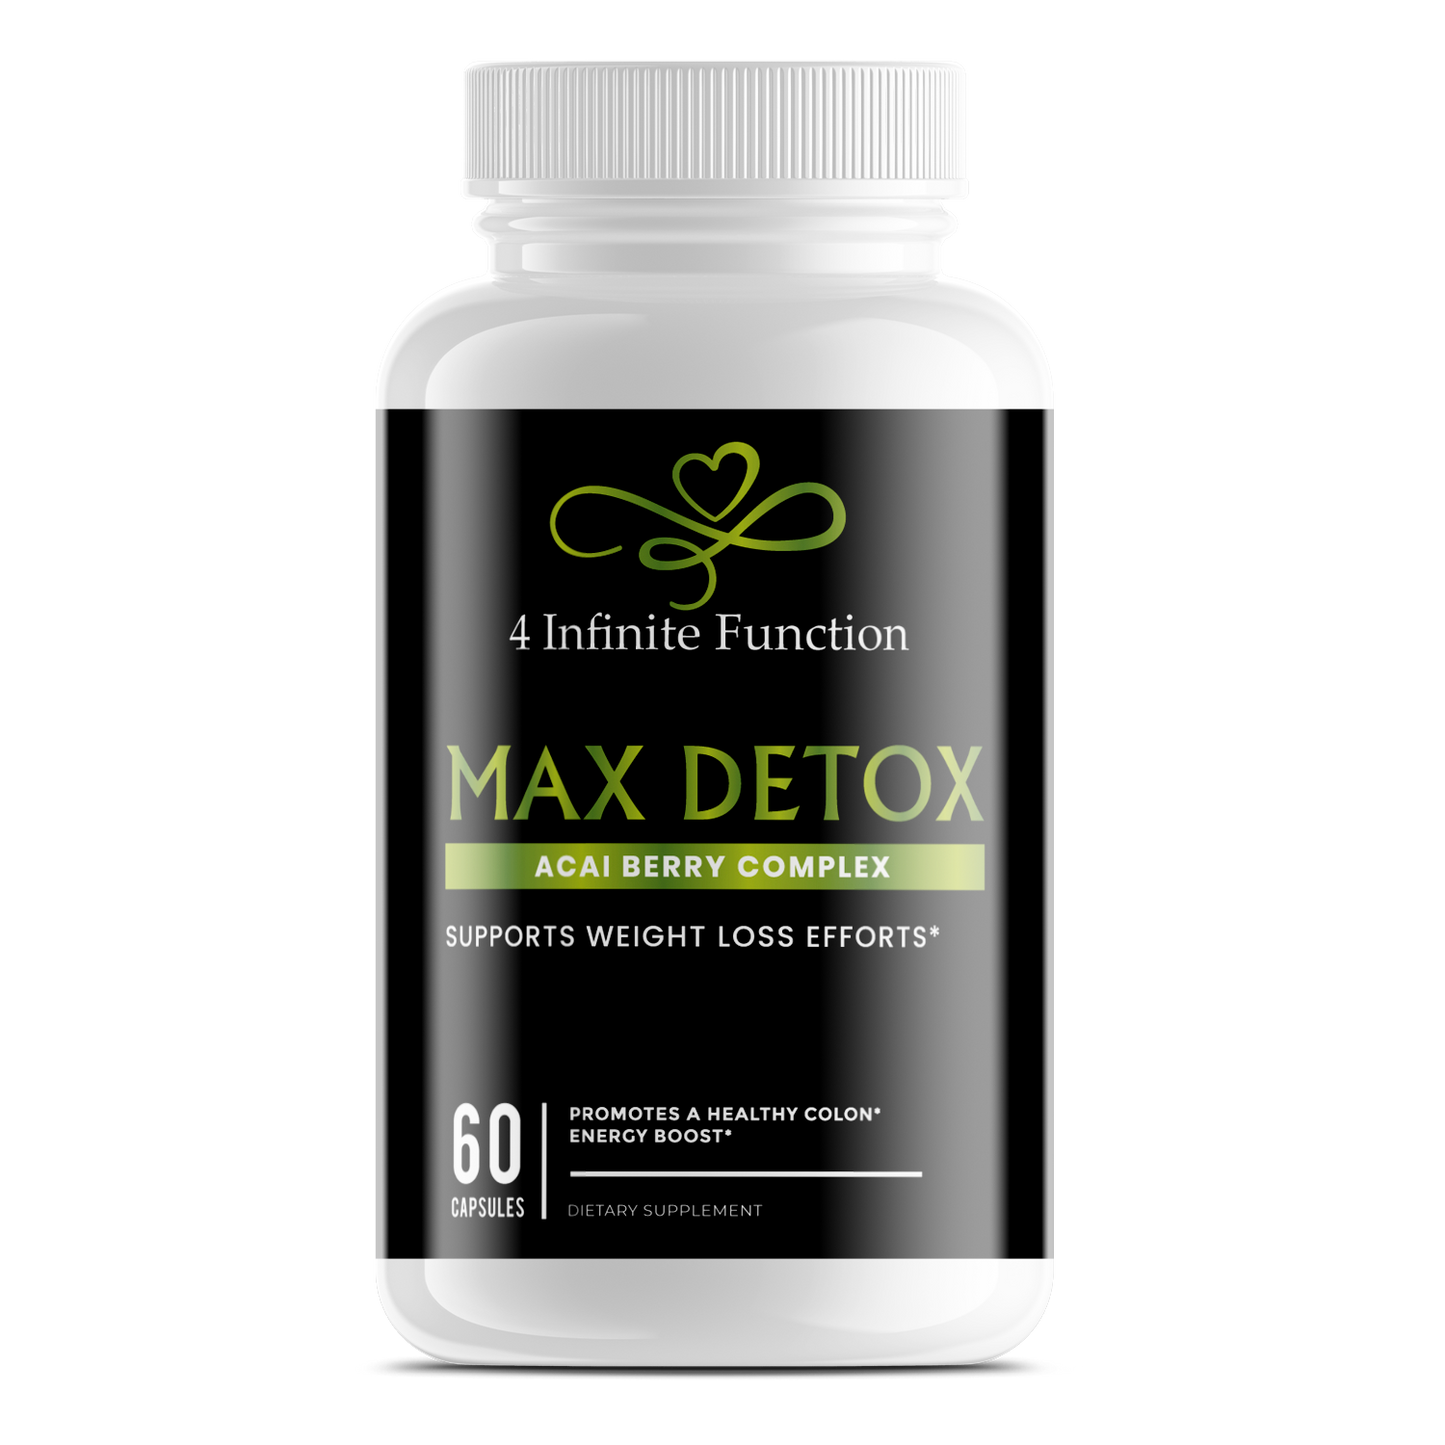 Max Detox